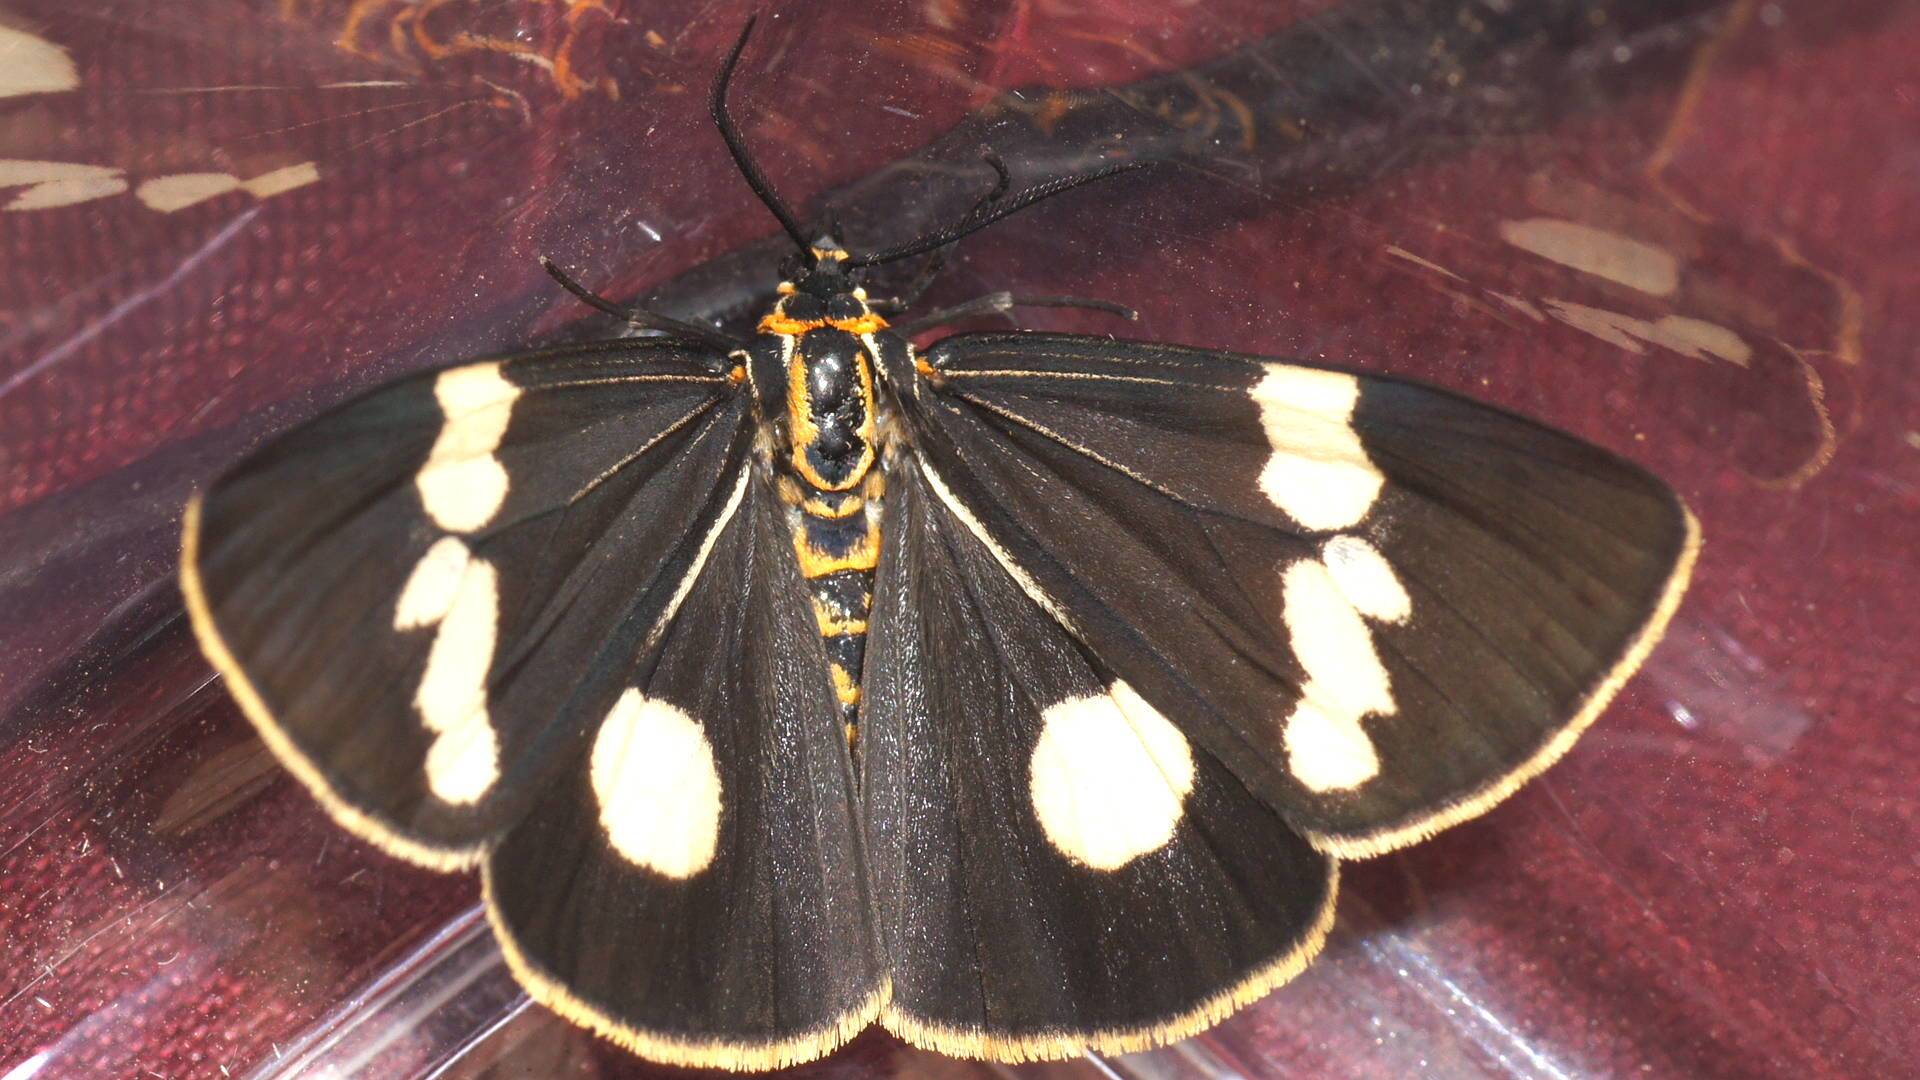 Senecio Moth (Nyctemera amicus)